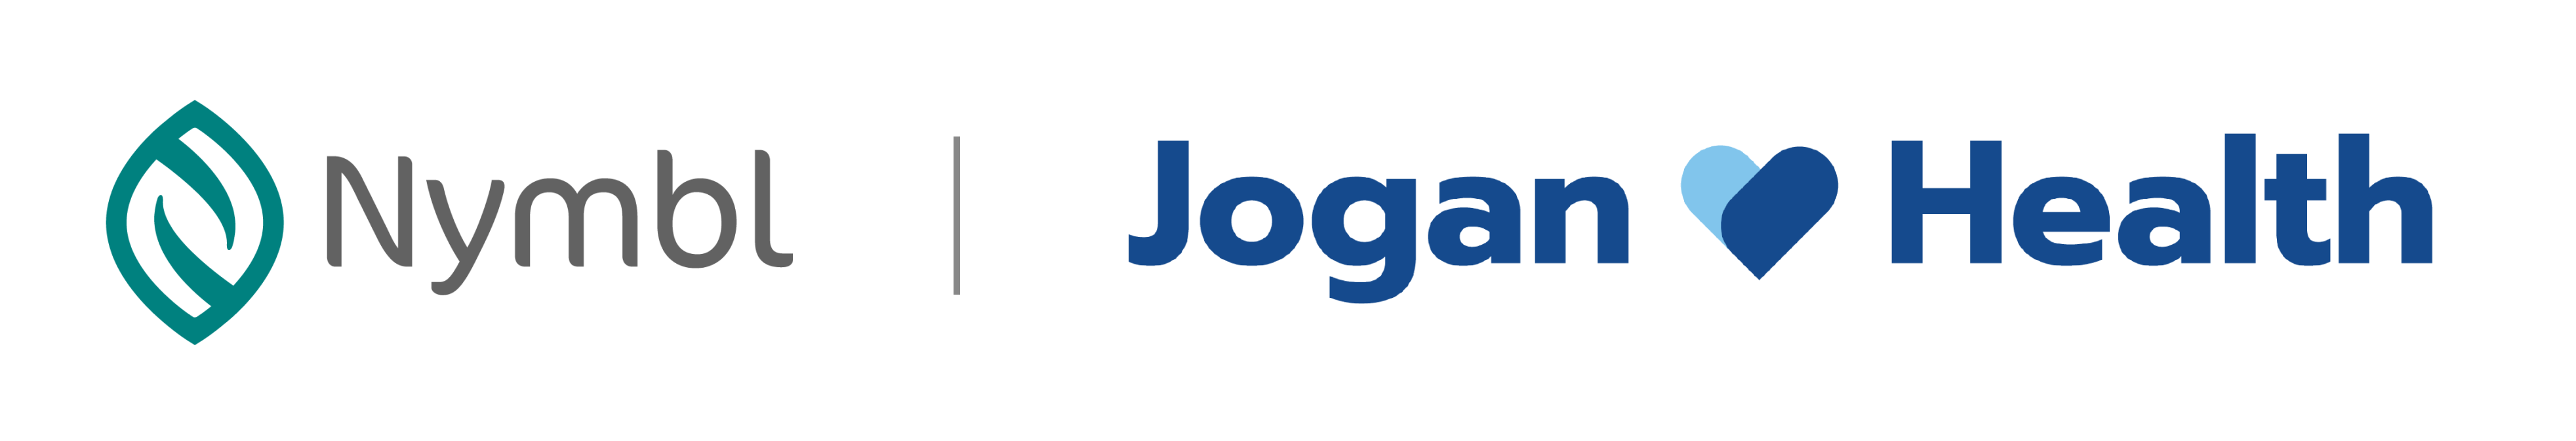 Nymbl and Jogan logo